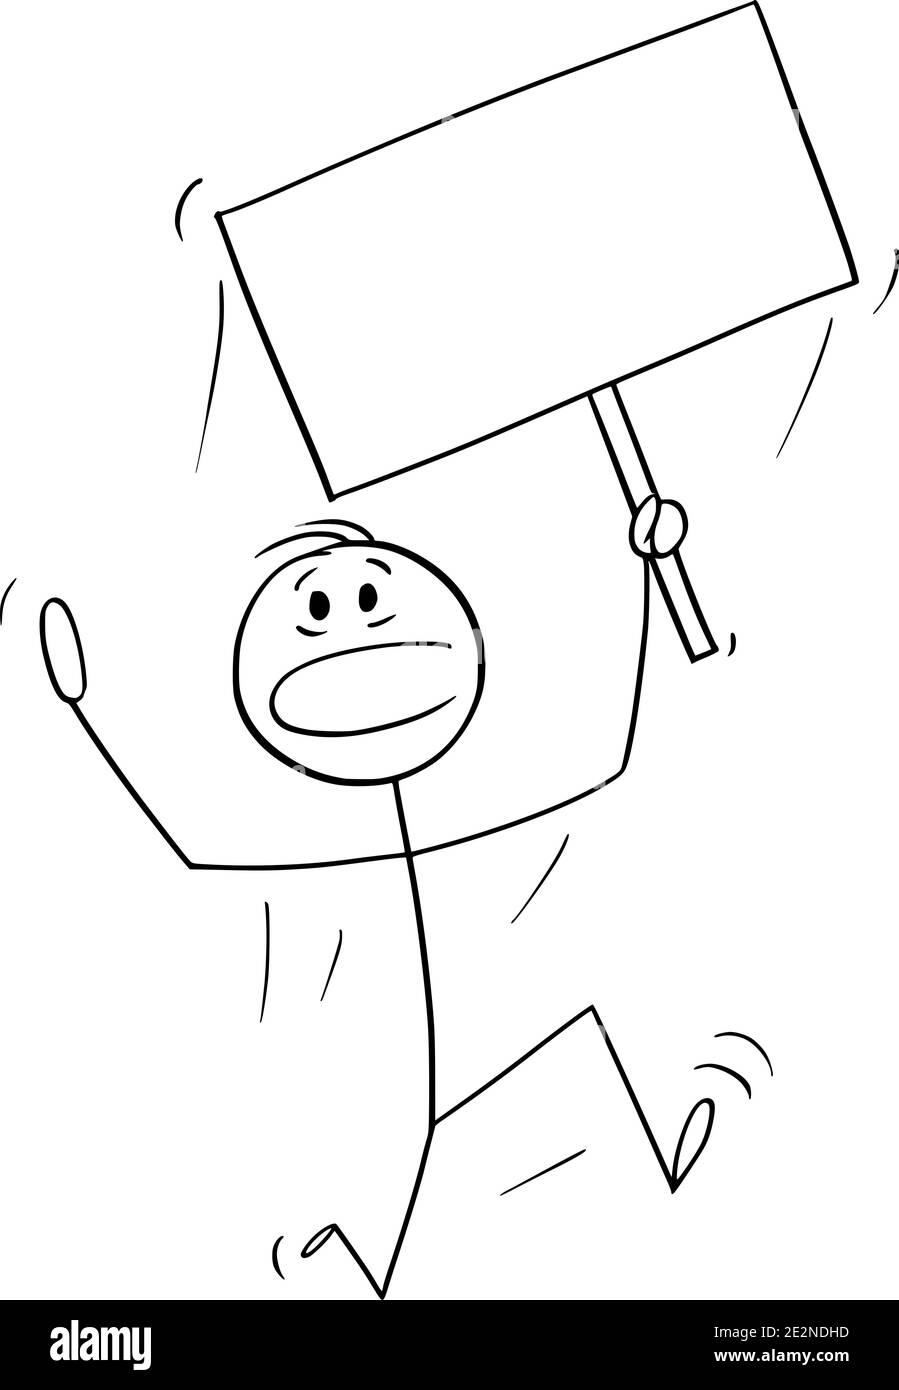 Vektor Cartoon Stick Figur Illustration des Mannes läuft in Angst oder Panik und hält leere Zeichen für Text. Stock Vektor